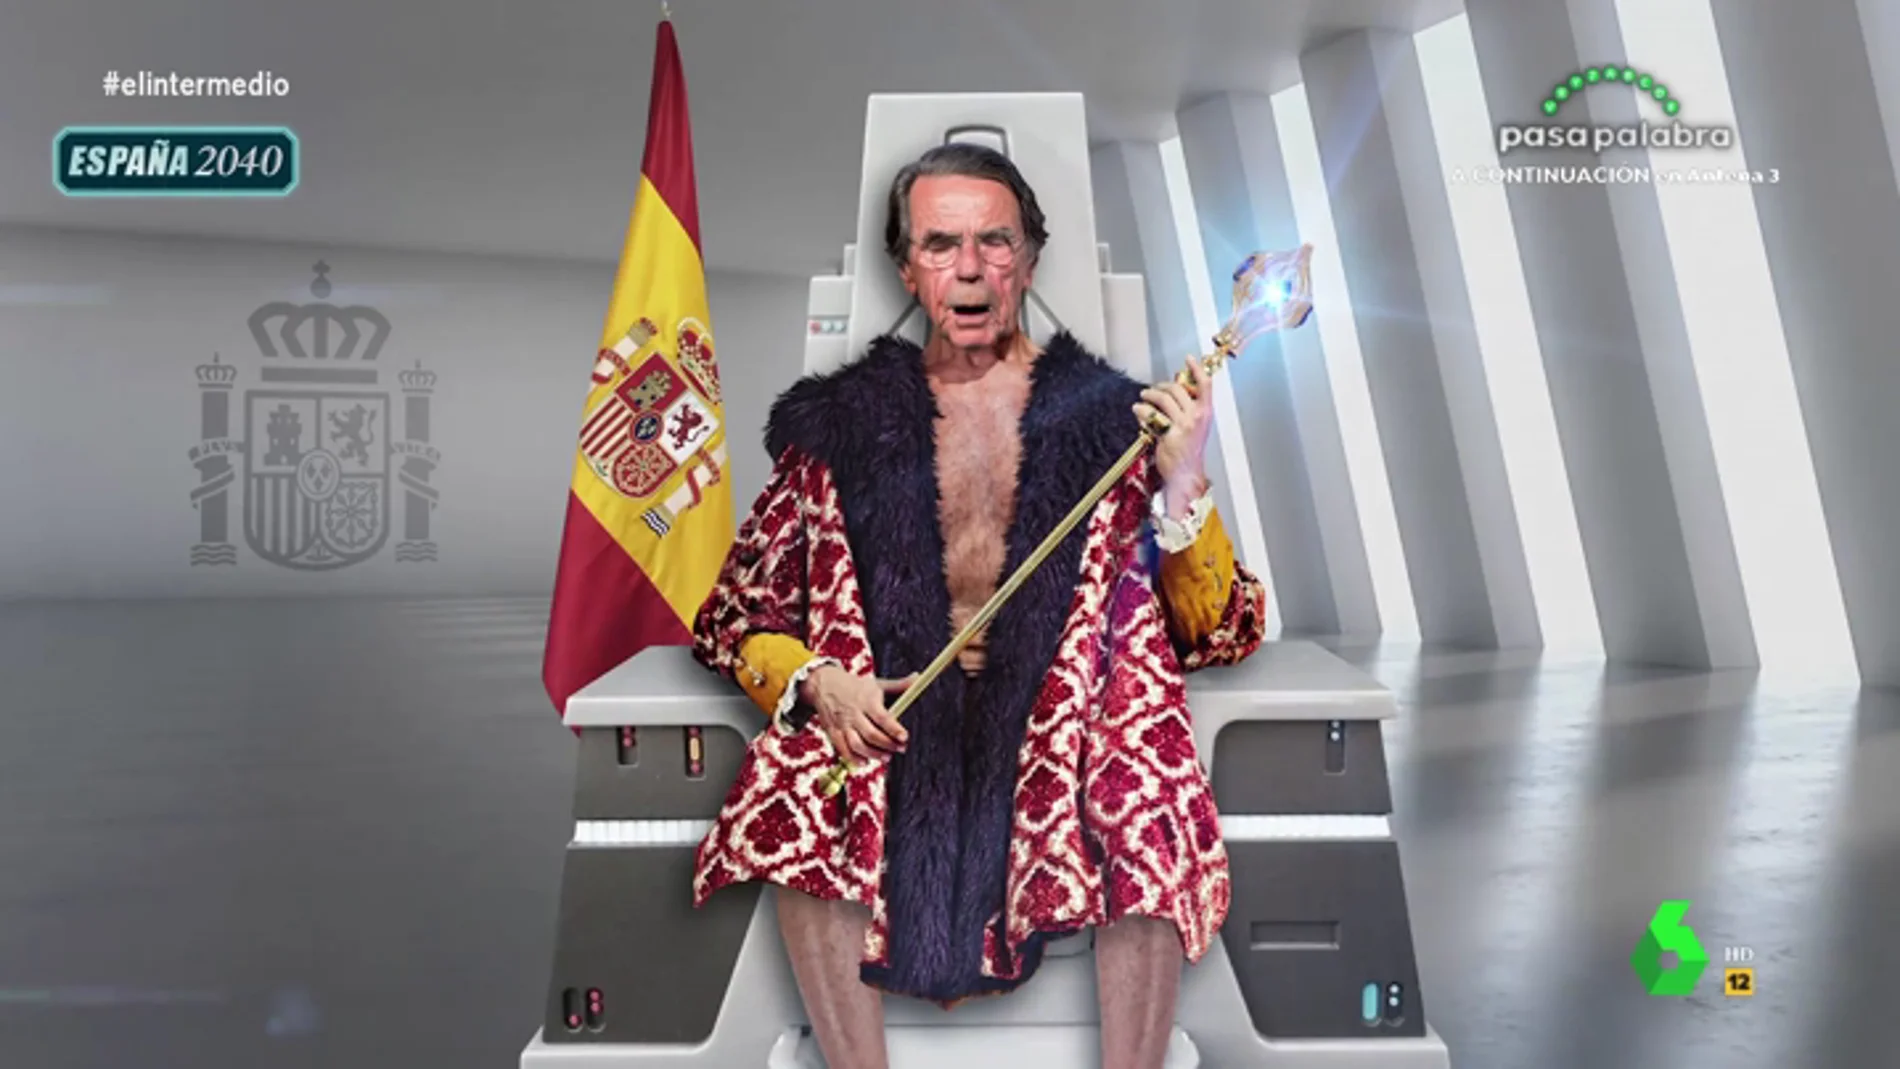 Joaquín Reyes se convierte en Aznar para advertirnos sobre el coronavirus: "En tiempo de rojos, crisis, enfermedad y palomos cojos"